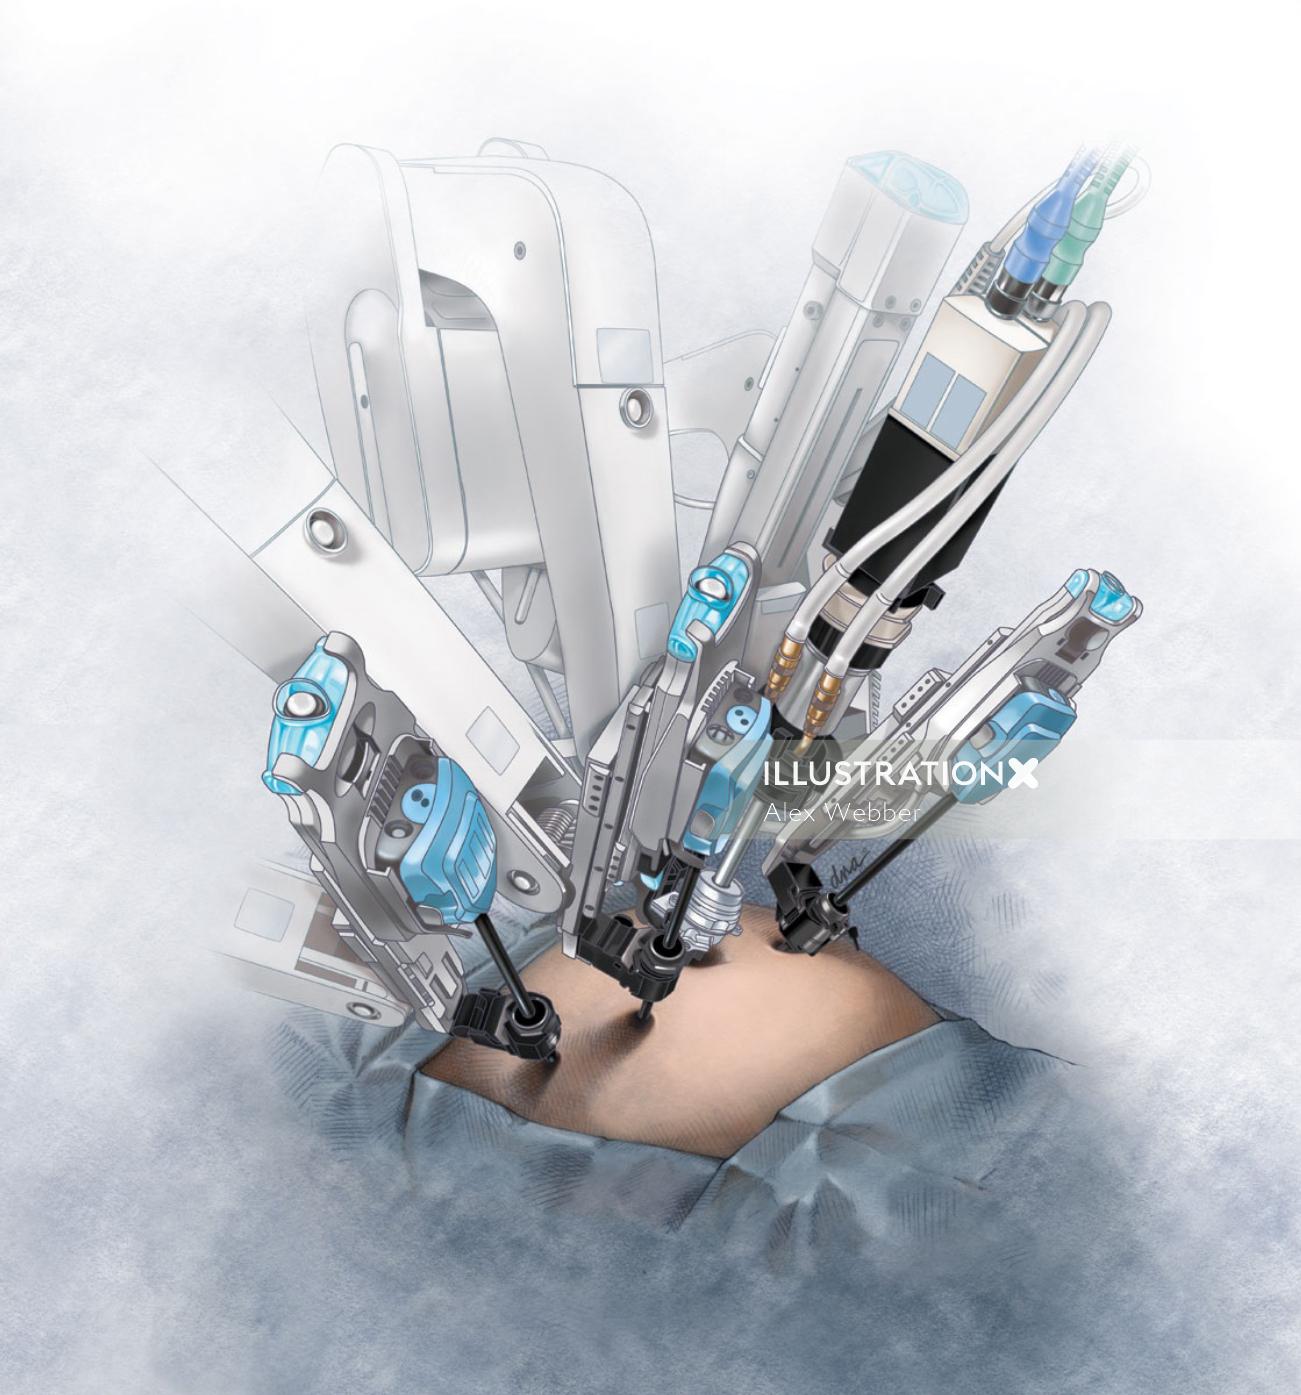 Illustration de chirurgie robotique par AlexBaker